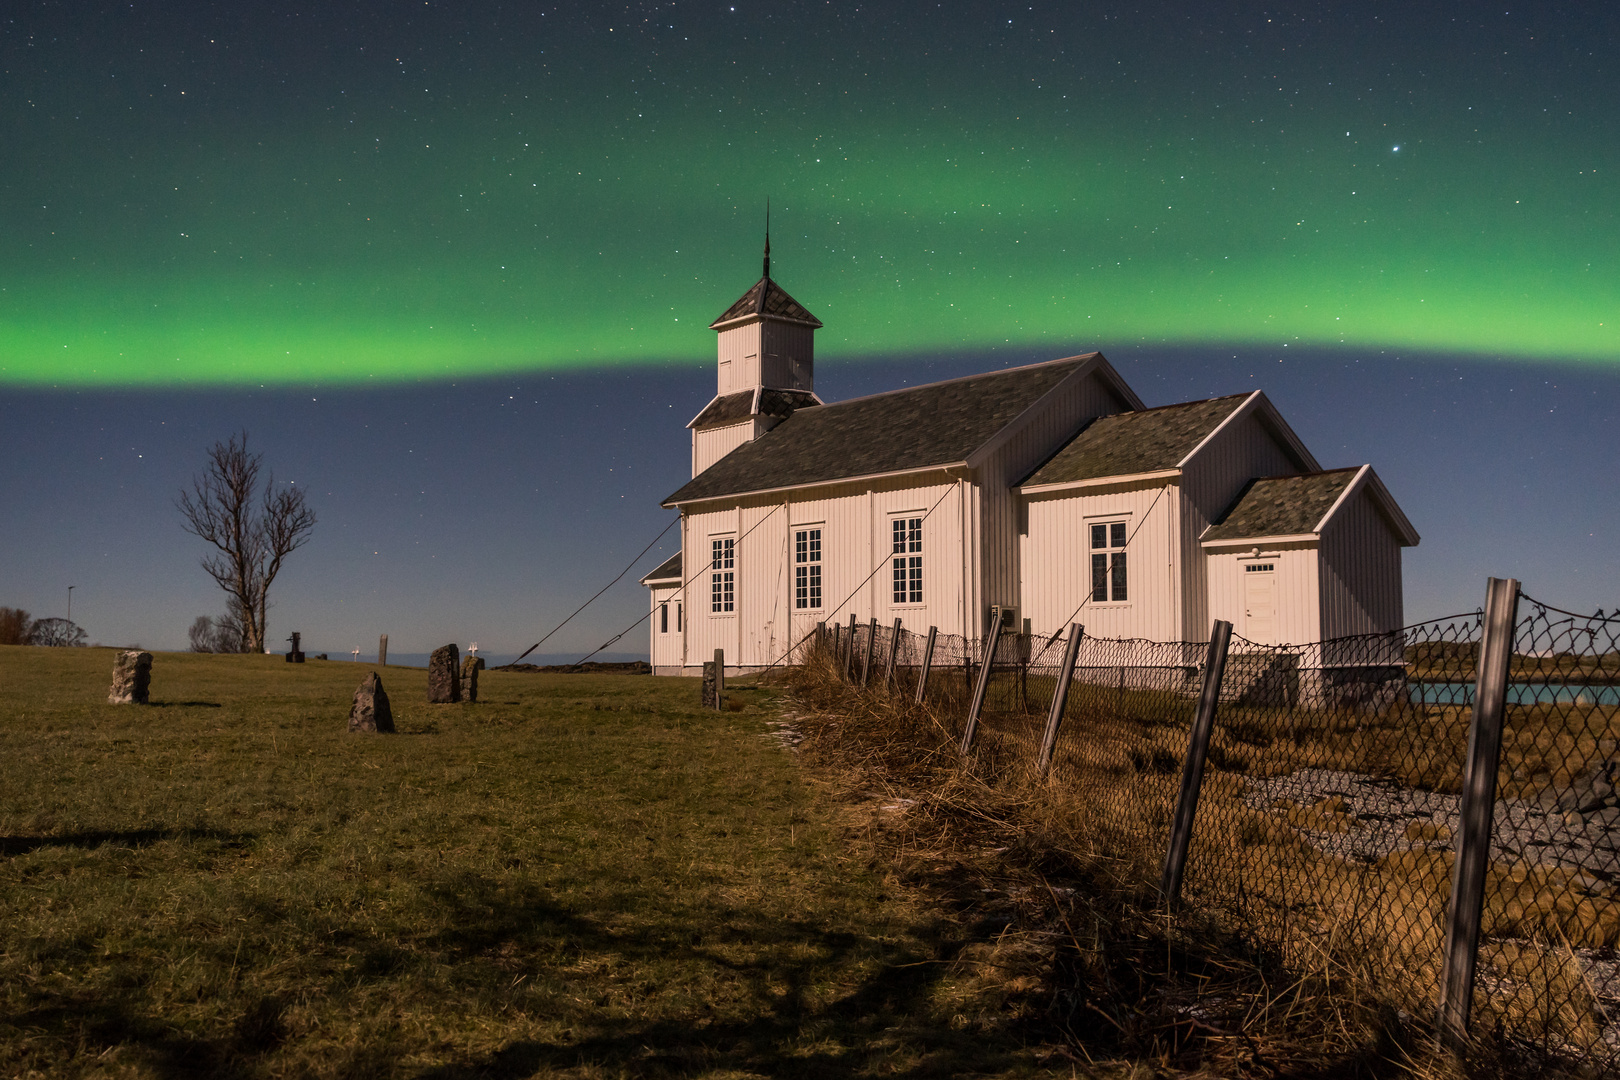 Gimsoy Kirche im Nordlicht und Mondlicht